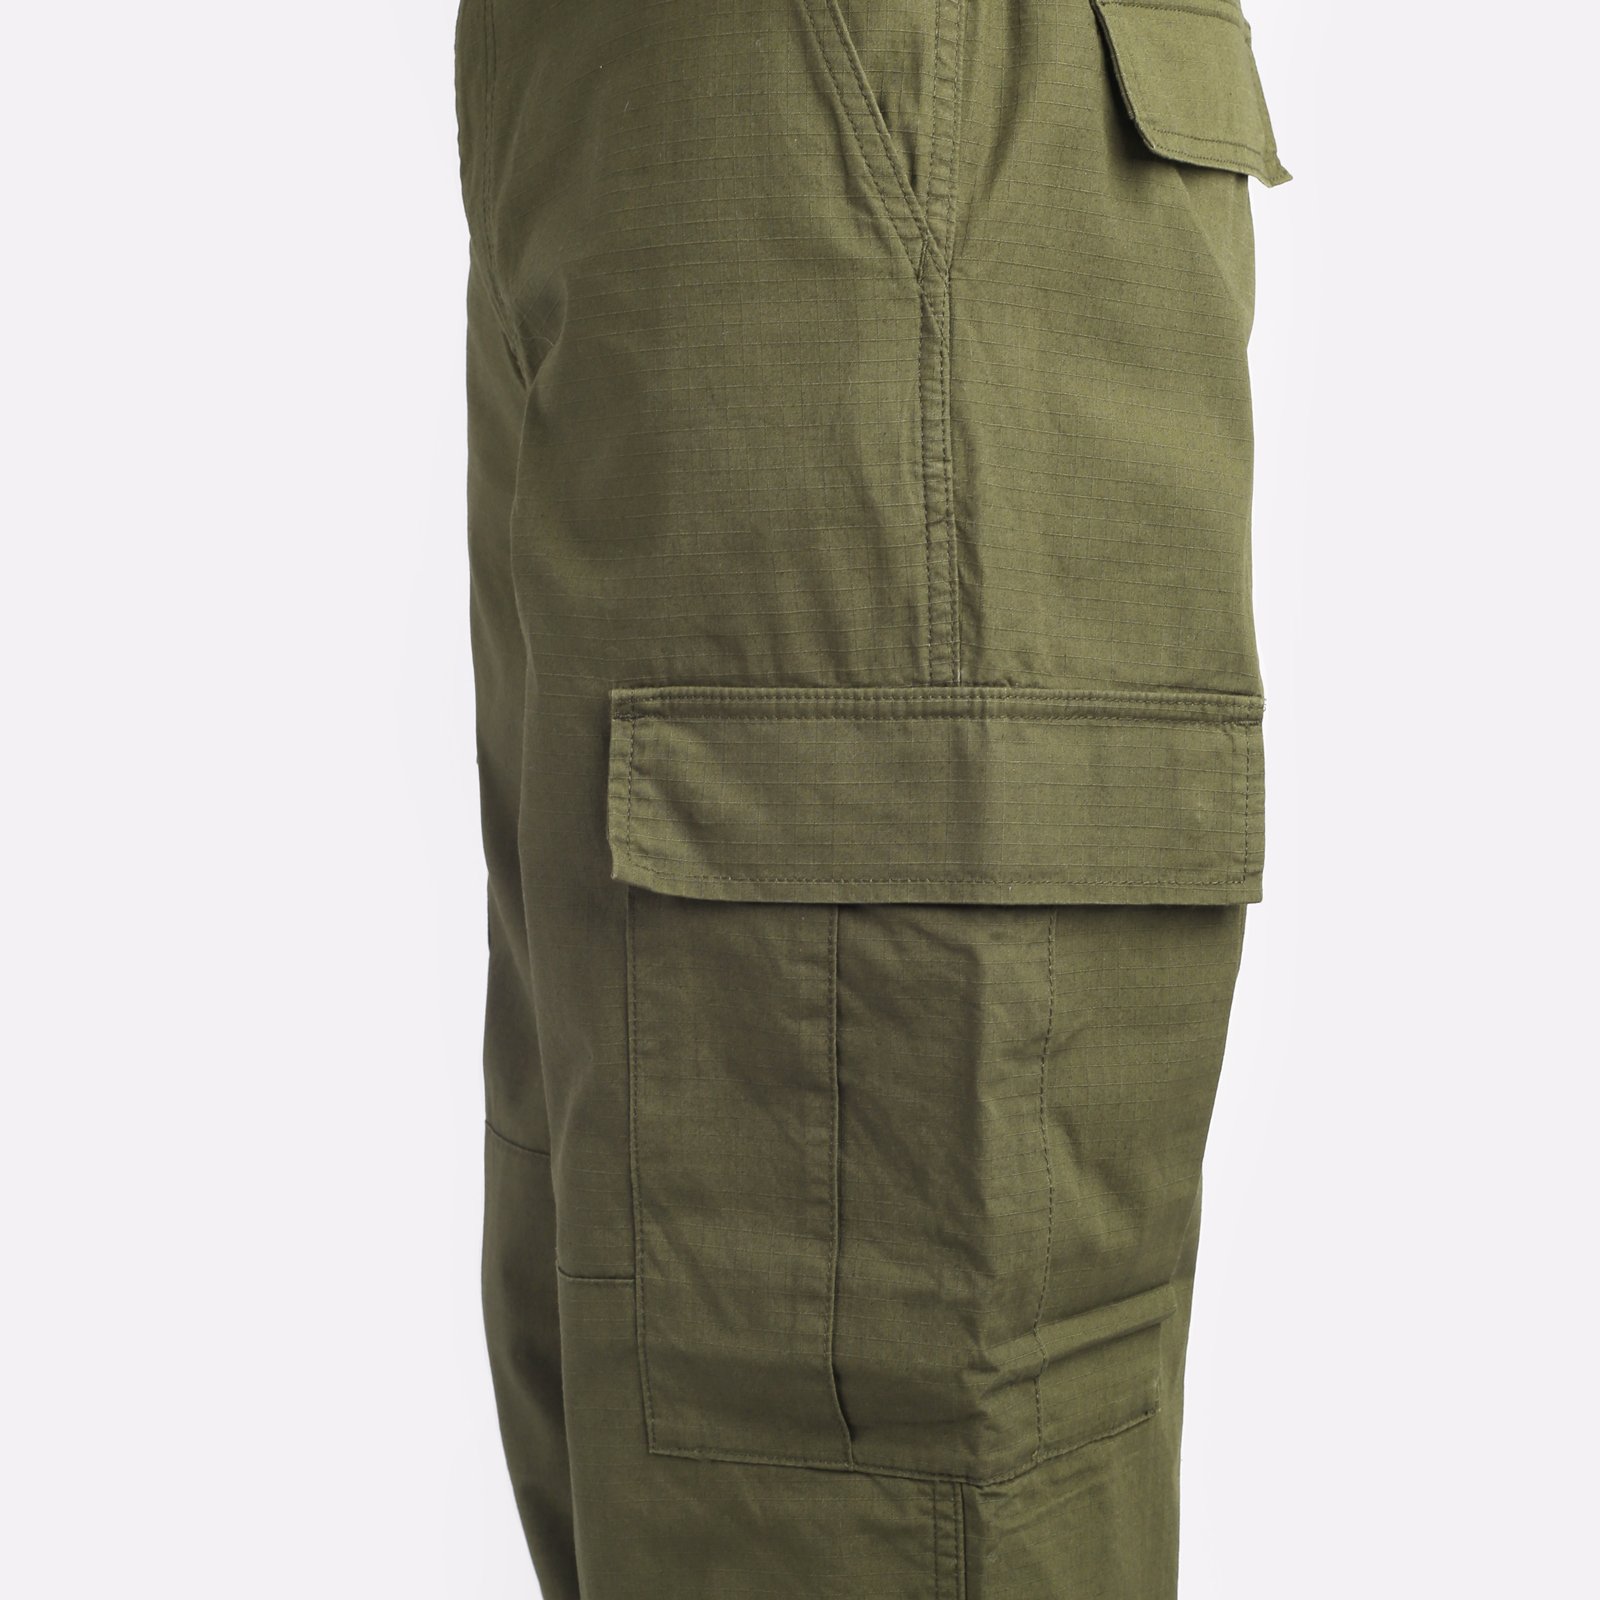 мужские зеленые брюки Carhartt WIP Regular Cargo Pant I032467-cypress - цена, описание, фото 4